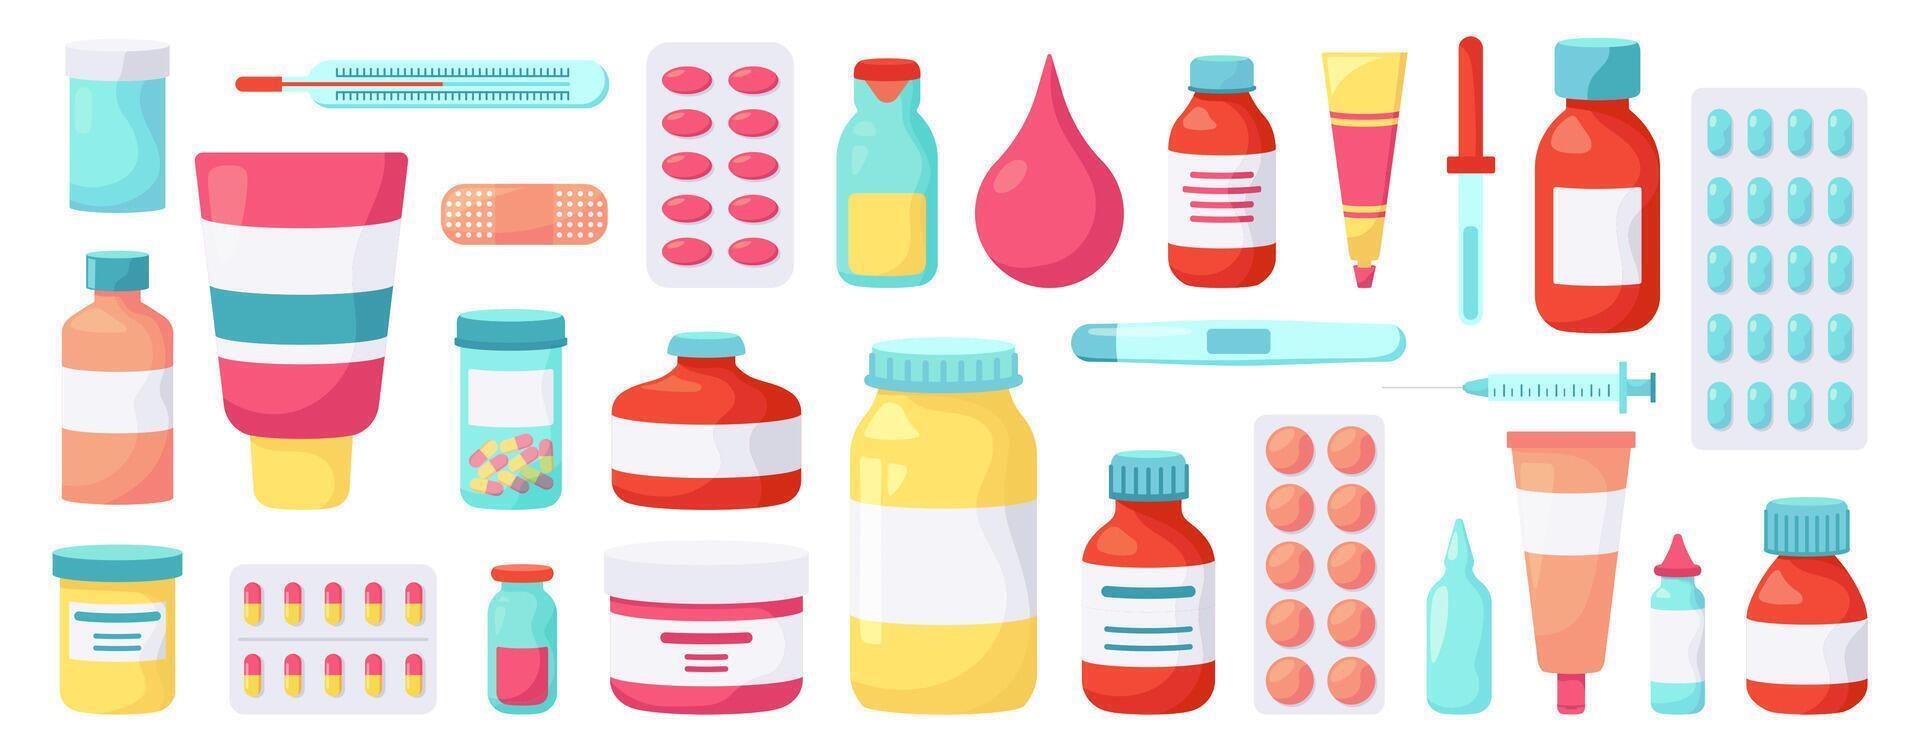 Pharmacy medications. Medicine drugs, pharmaceutical treatment, vitamins blister packs, medicine pills bottles vector illustration icons set